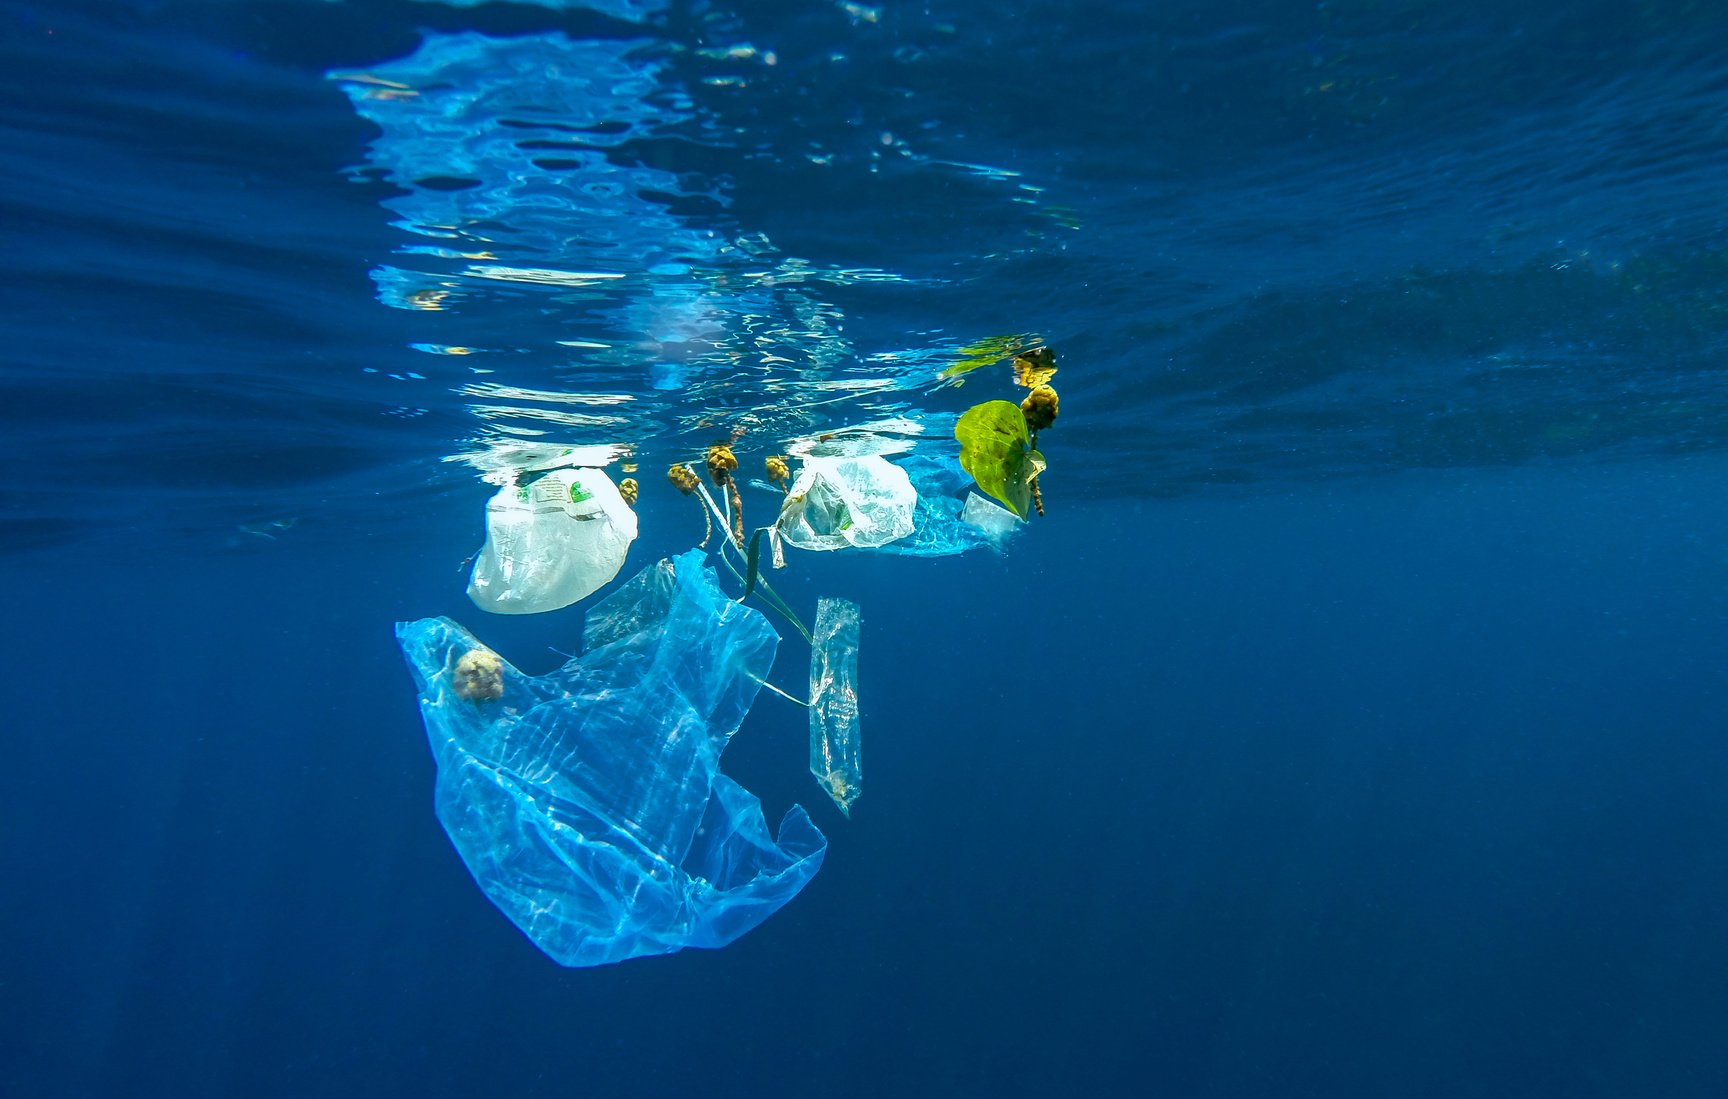 ΙΕΛΚΑ: Πολύ μεγάλη μείωση της χρήσης πλαστικής σακούλας στα σουπερμάρκετ τον πρώτο μήνα εφαρμογής της νέας σχετικής νομοθεσίας